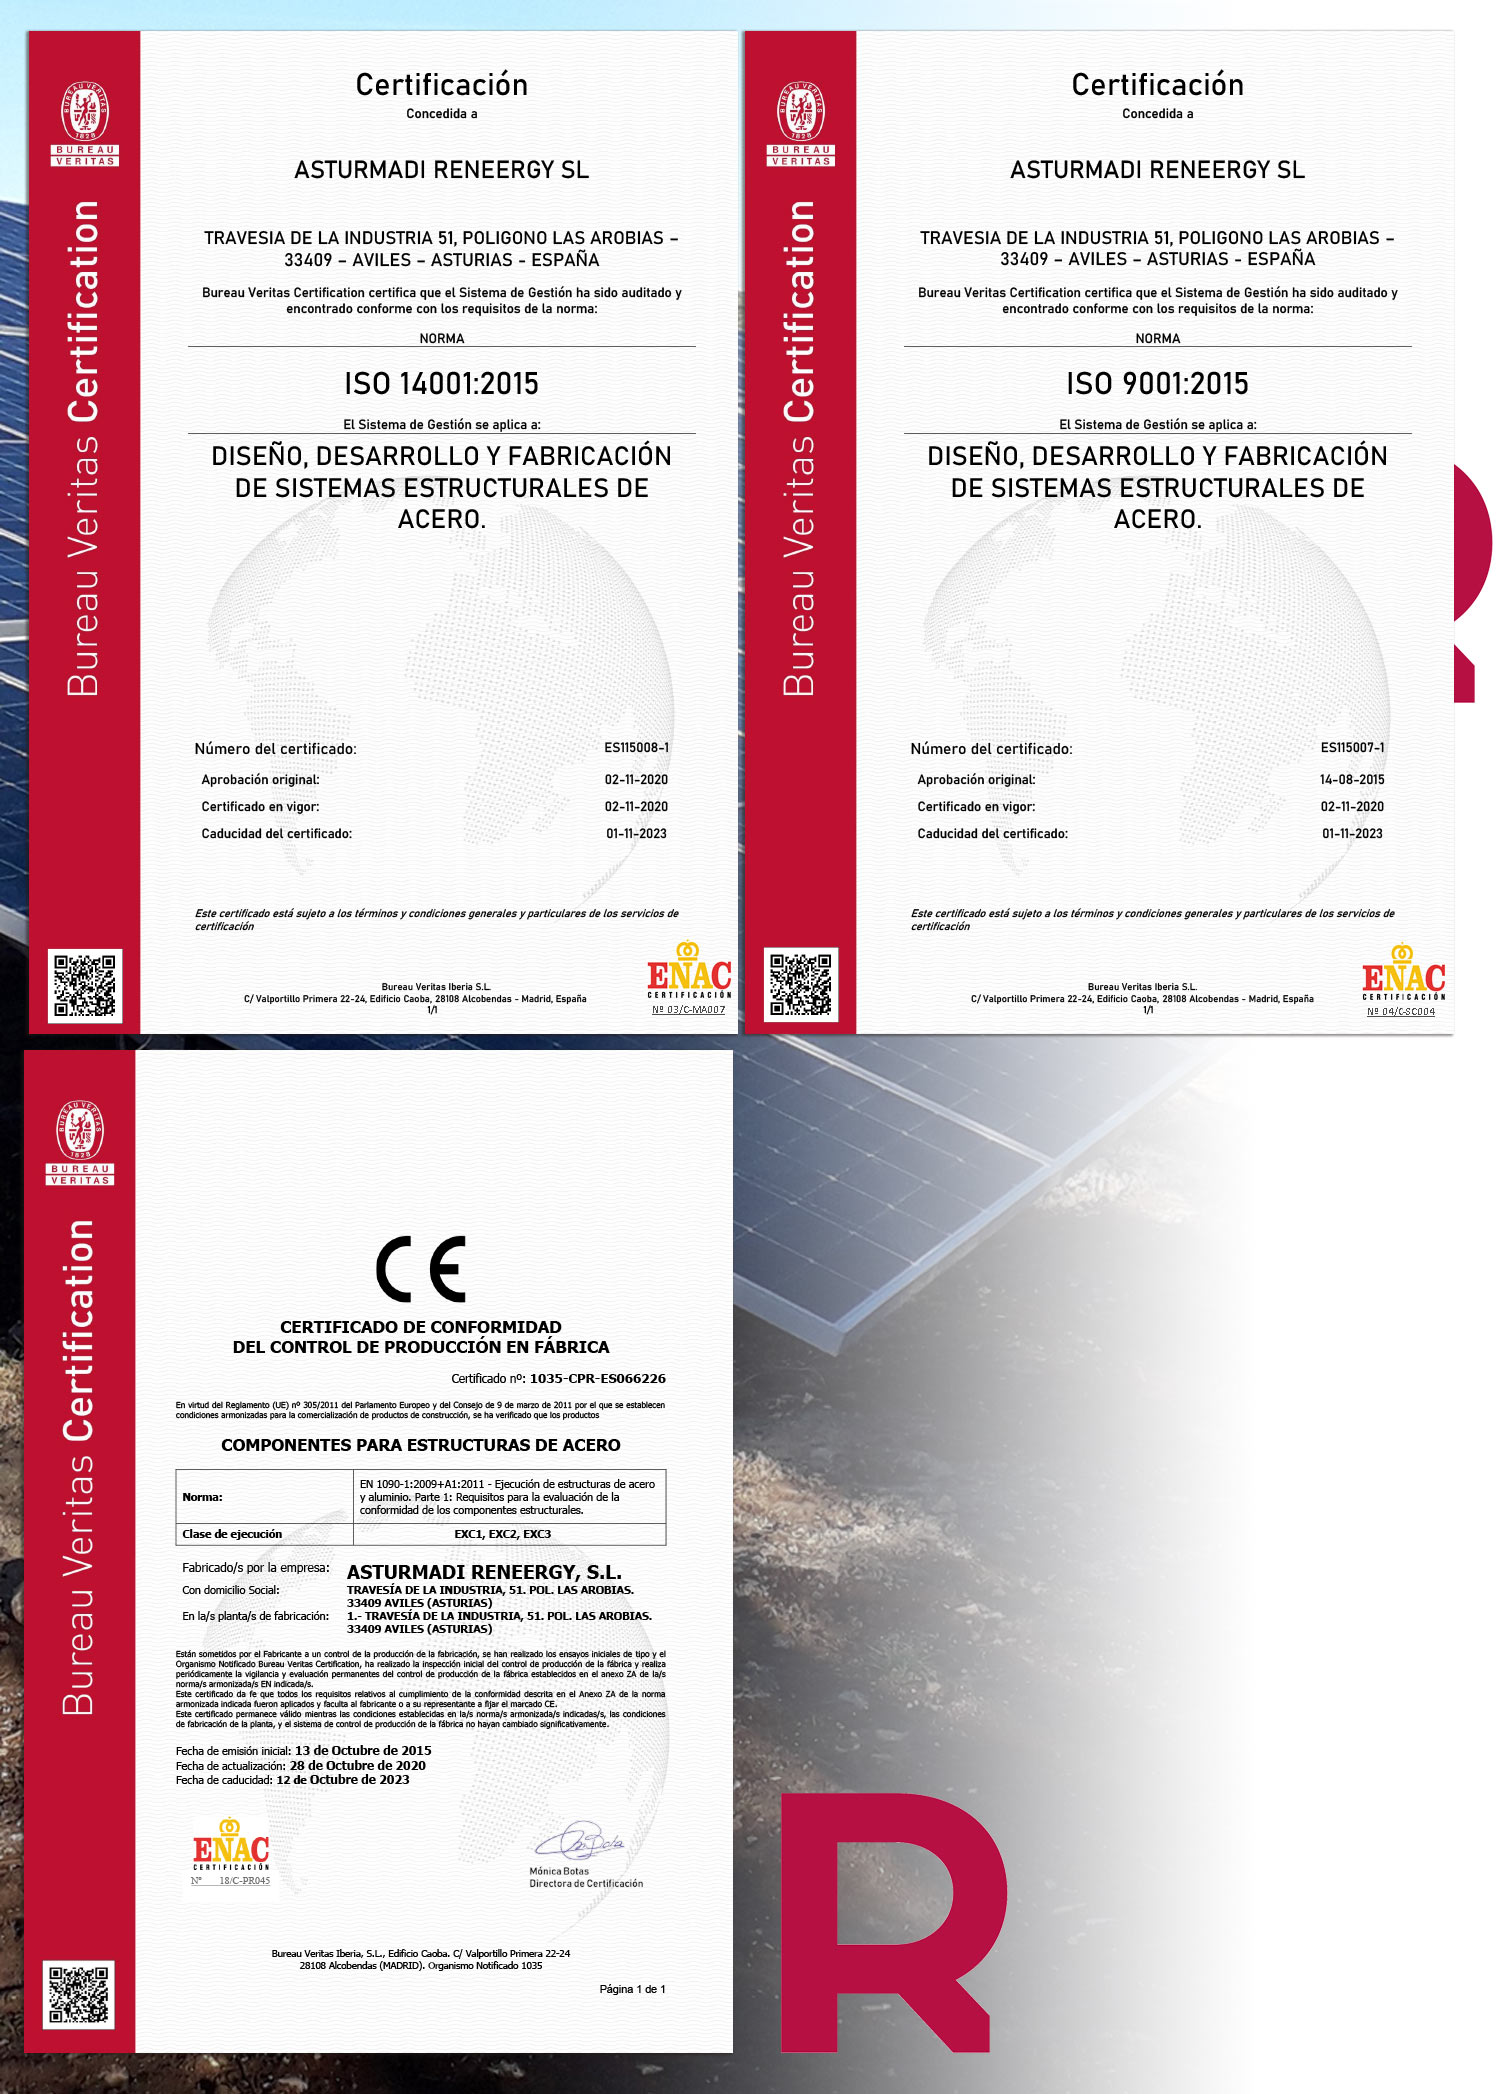 Reneergy certificados